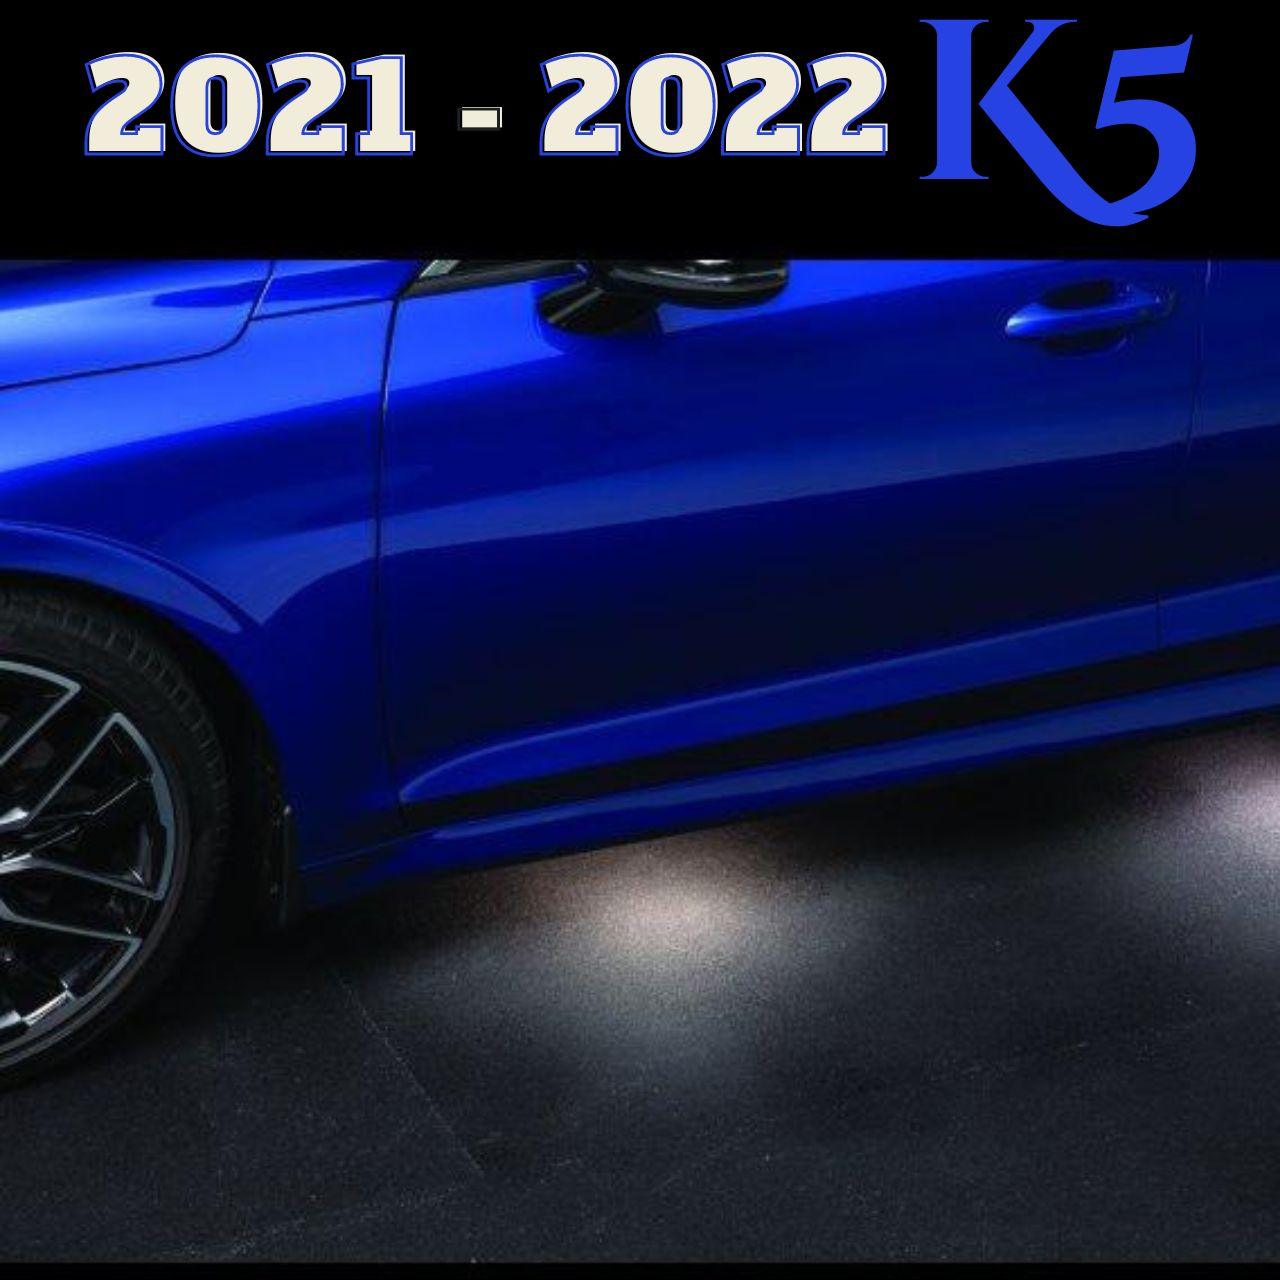 Kia K5 Puddle Lights for 2021-2022 K5 Models